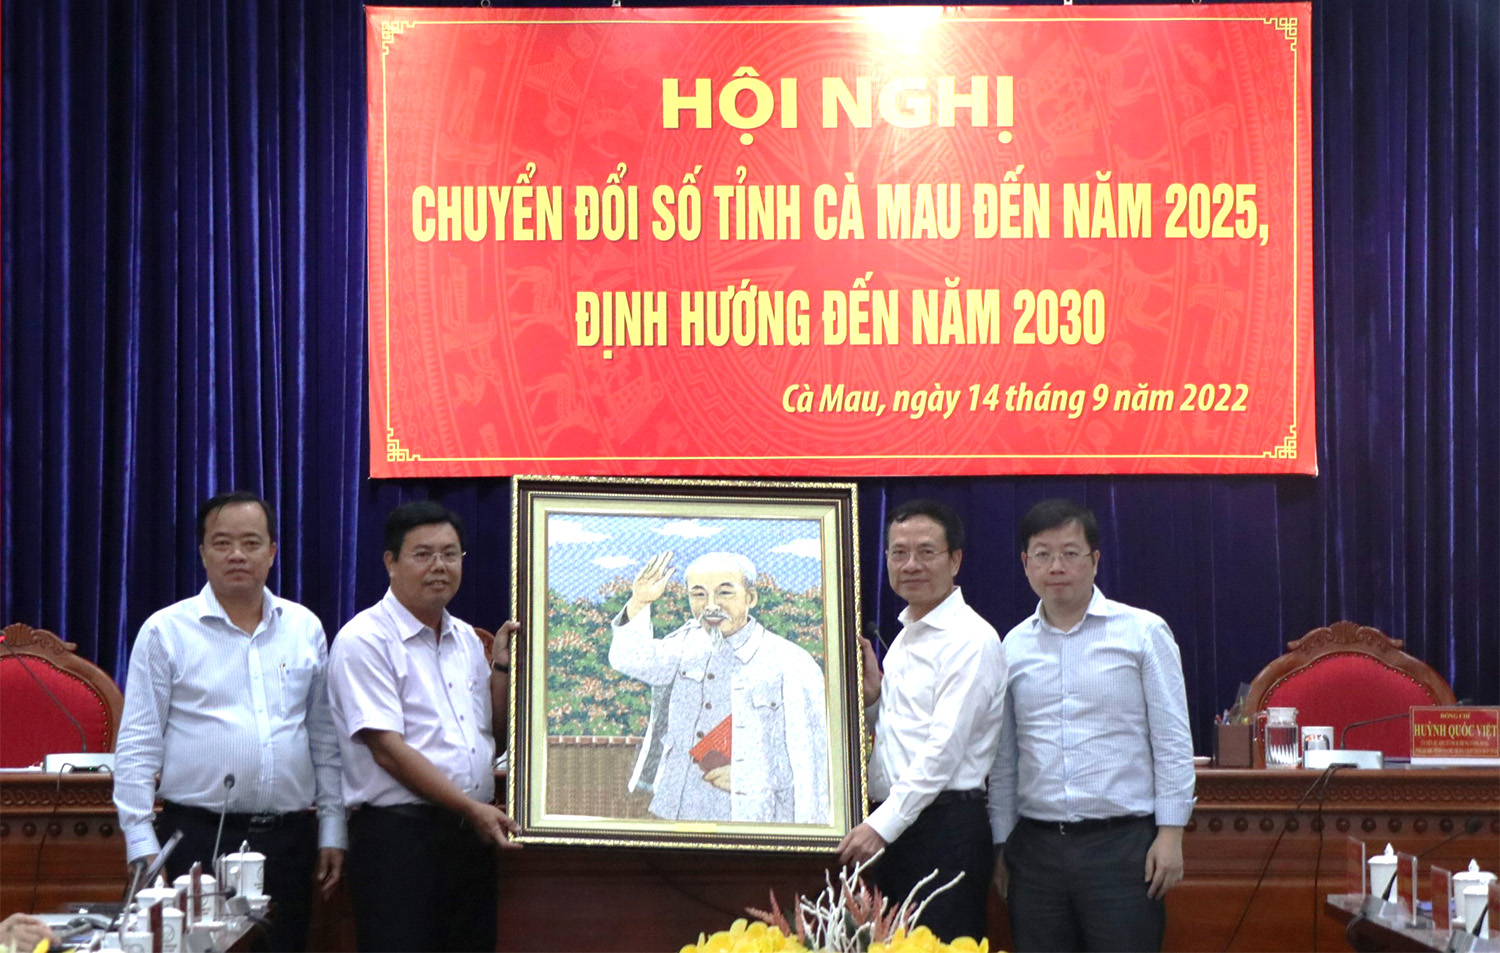 Đồng chí Nguyễn Tiến Hải và đồng chí Huỳnh Quốc Việt nhận quà lưu niệm từ đồng chí Bộ trưởng Bộ Thông tin và Truyền thông Nguyễn Mạnh Hùng.